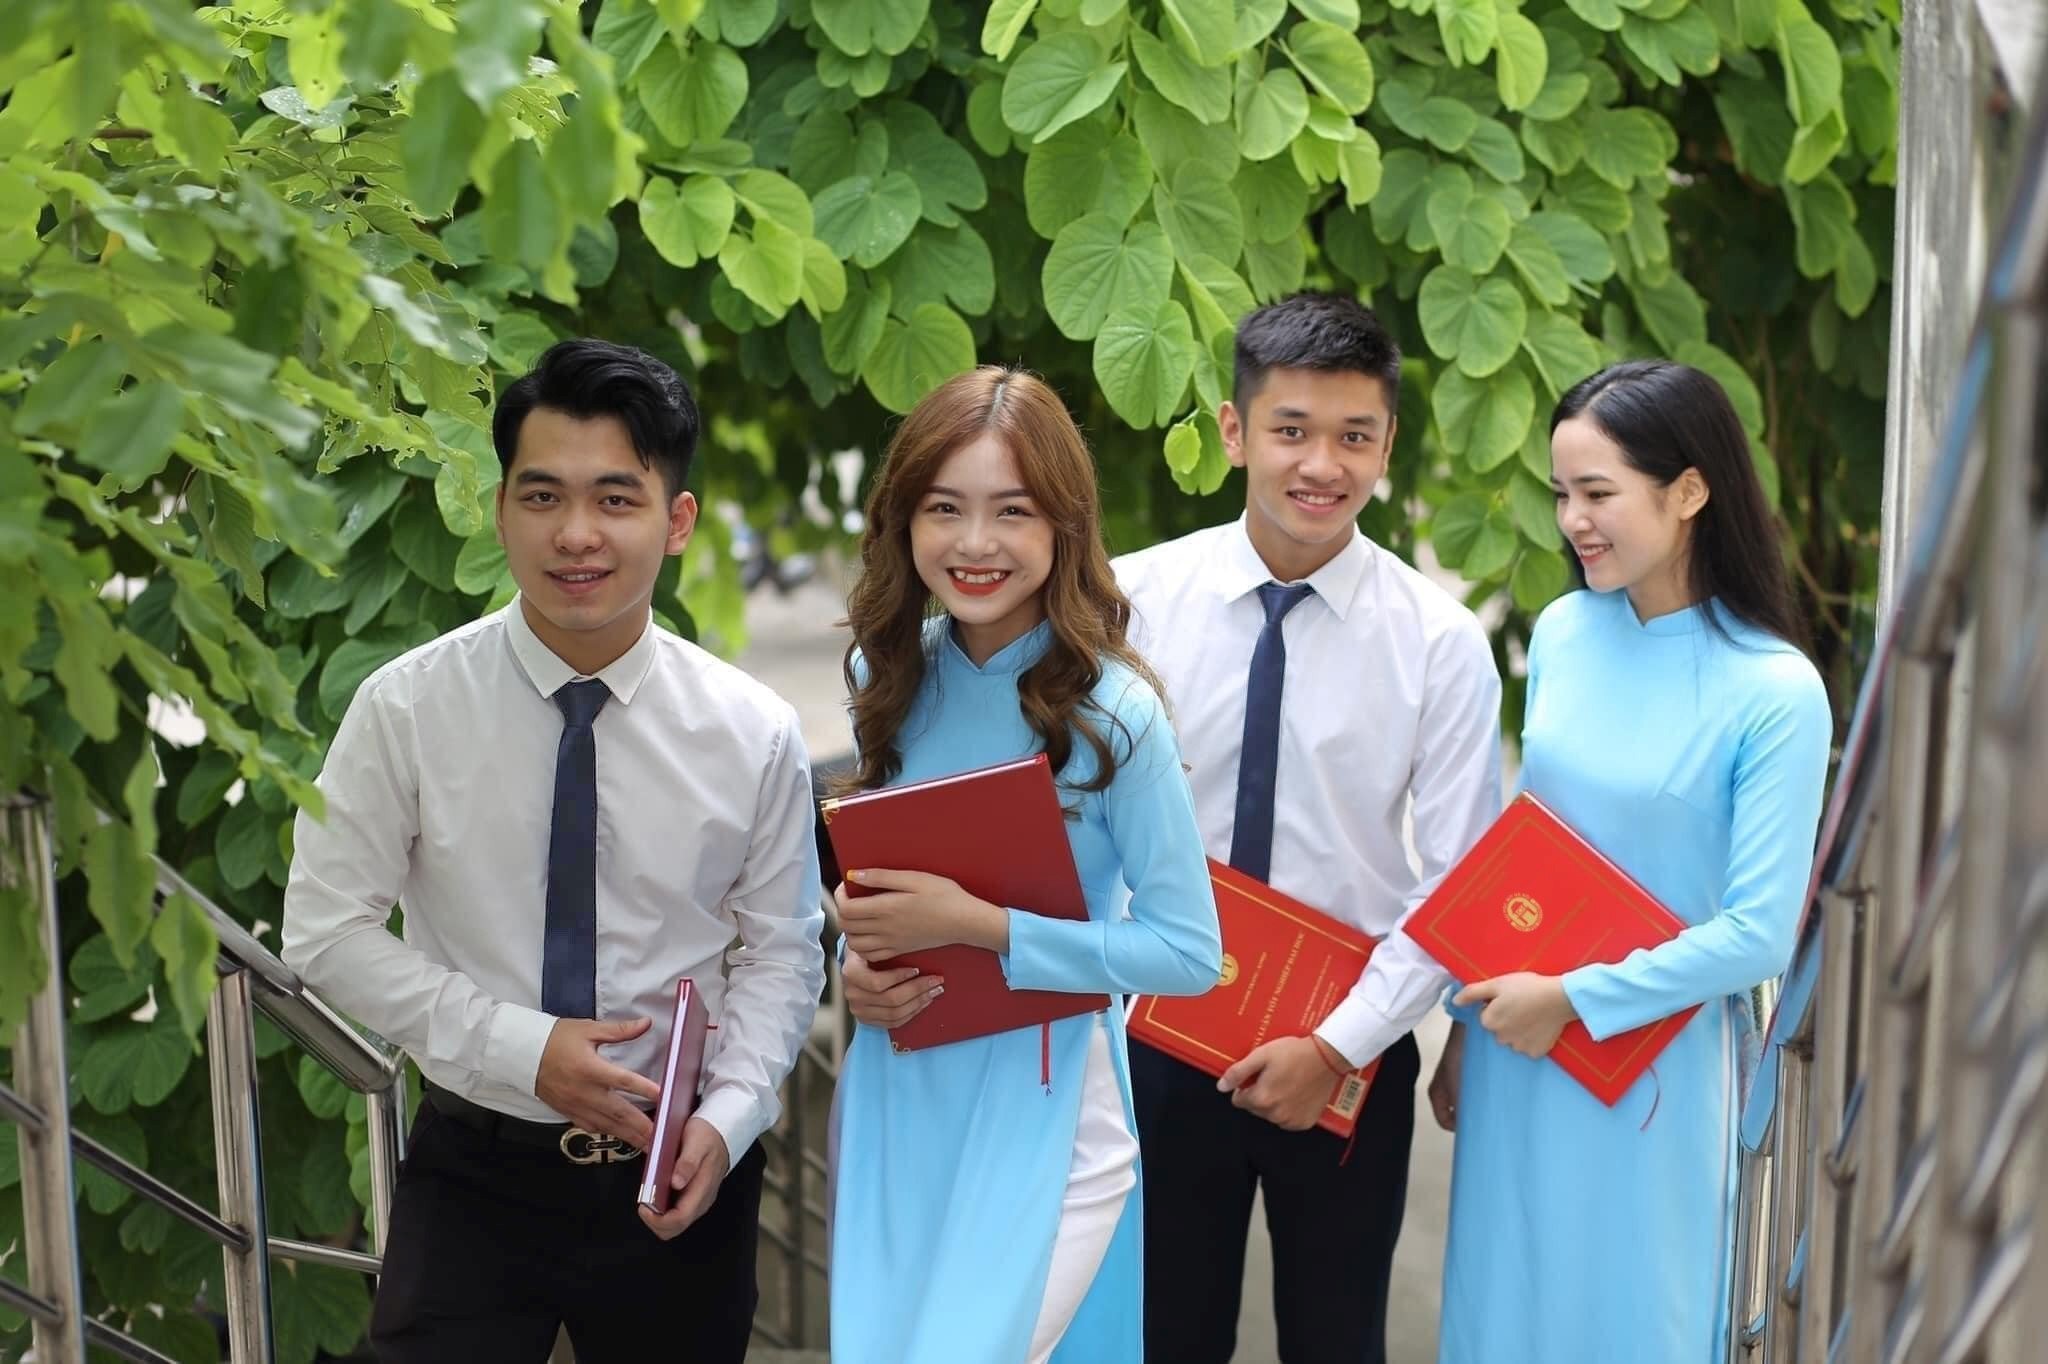 Đại học Mở Hà Nội tuyển sinh chương trình đào tạo [từ THPT, TC, CĐ lên ĐH] đào tạo từ xa 100%